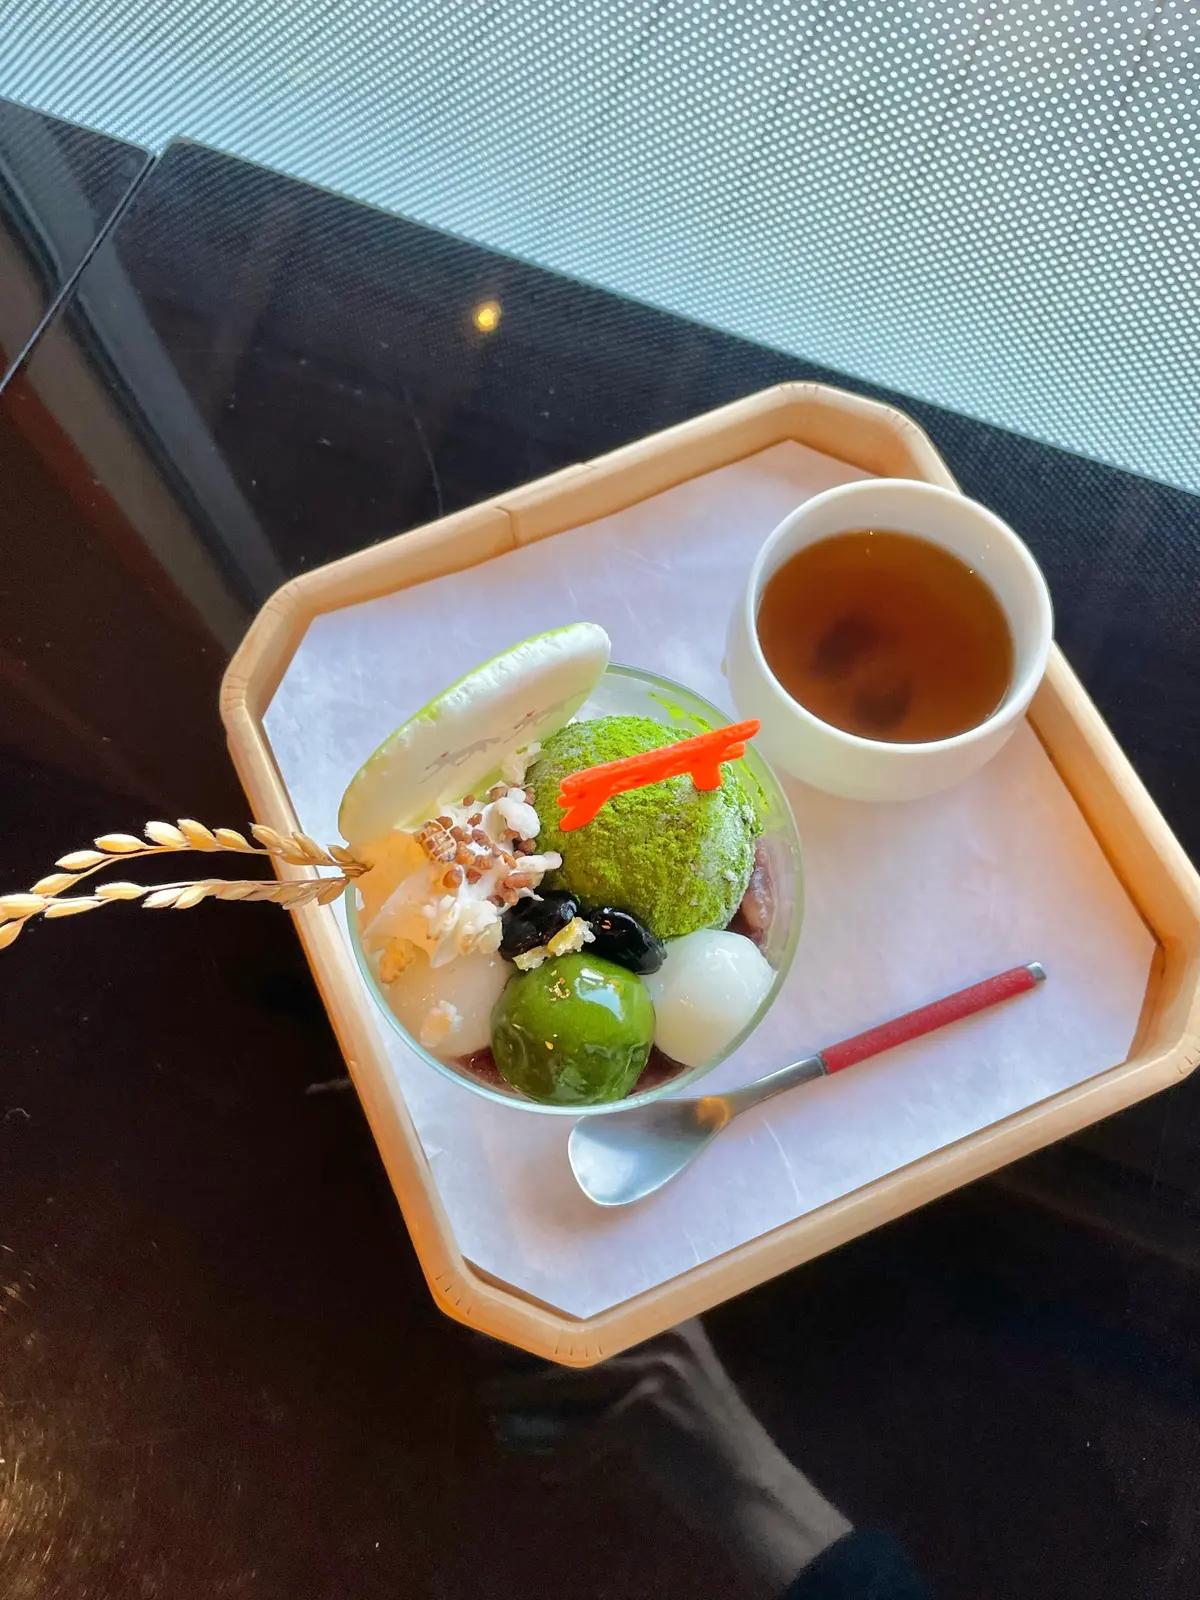 京都 伏見稲荷大社の休憩所「啼鳥菴（ていちょうあん）」内に設けられた「椿堂茶舗」がプロデュースする日本茶カフェ“稲荷茶寮”の稲荷パフェ